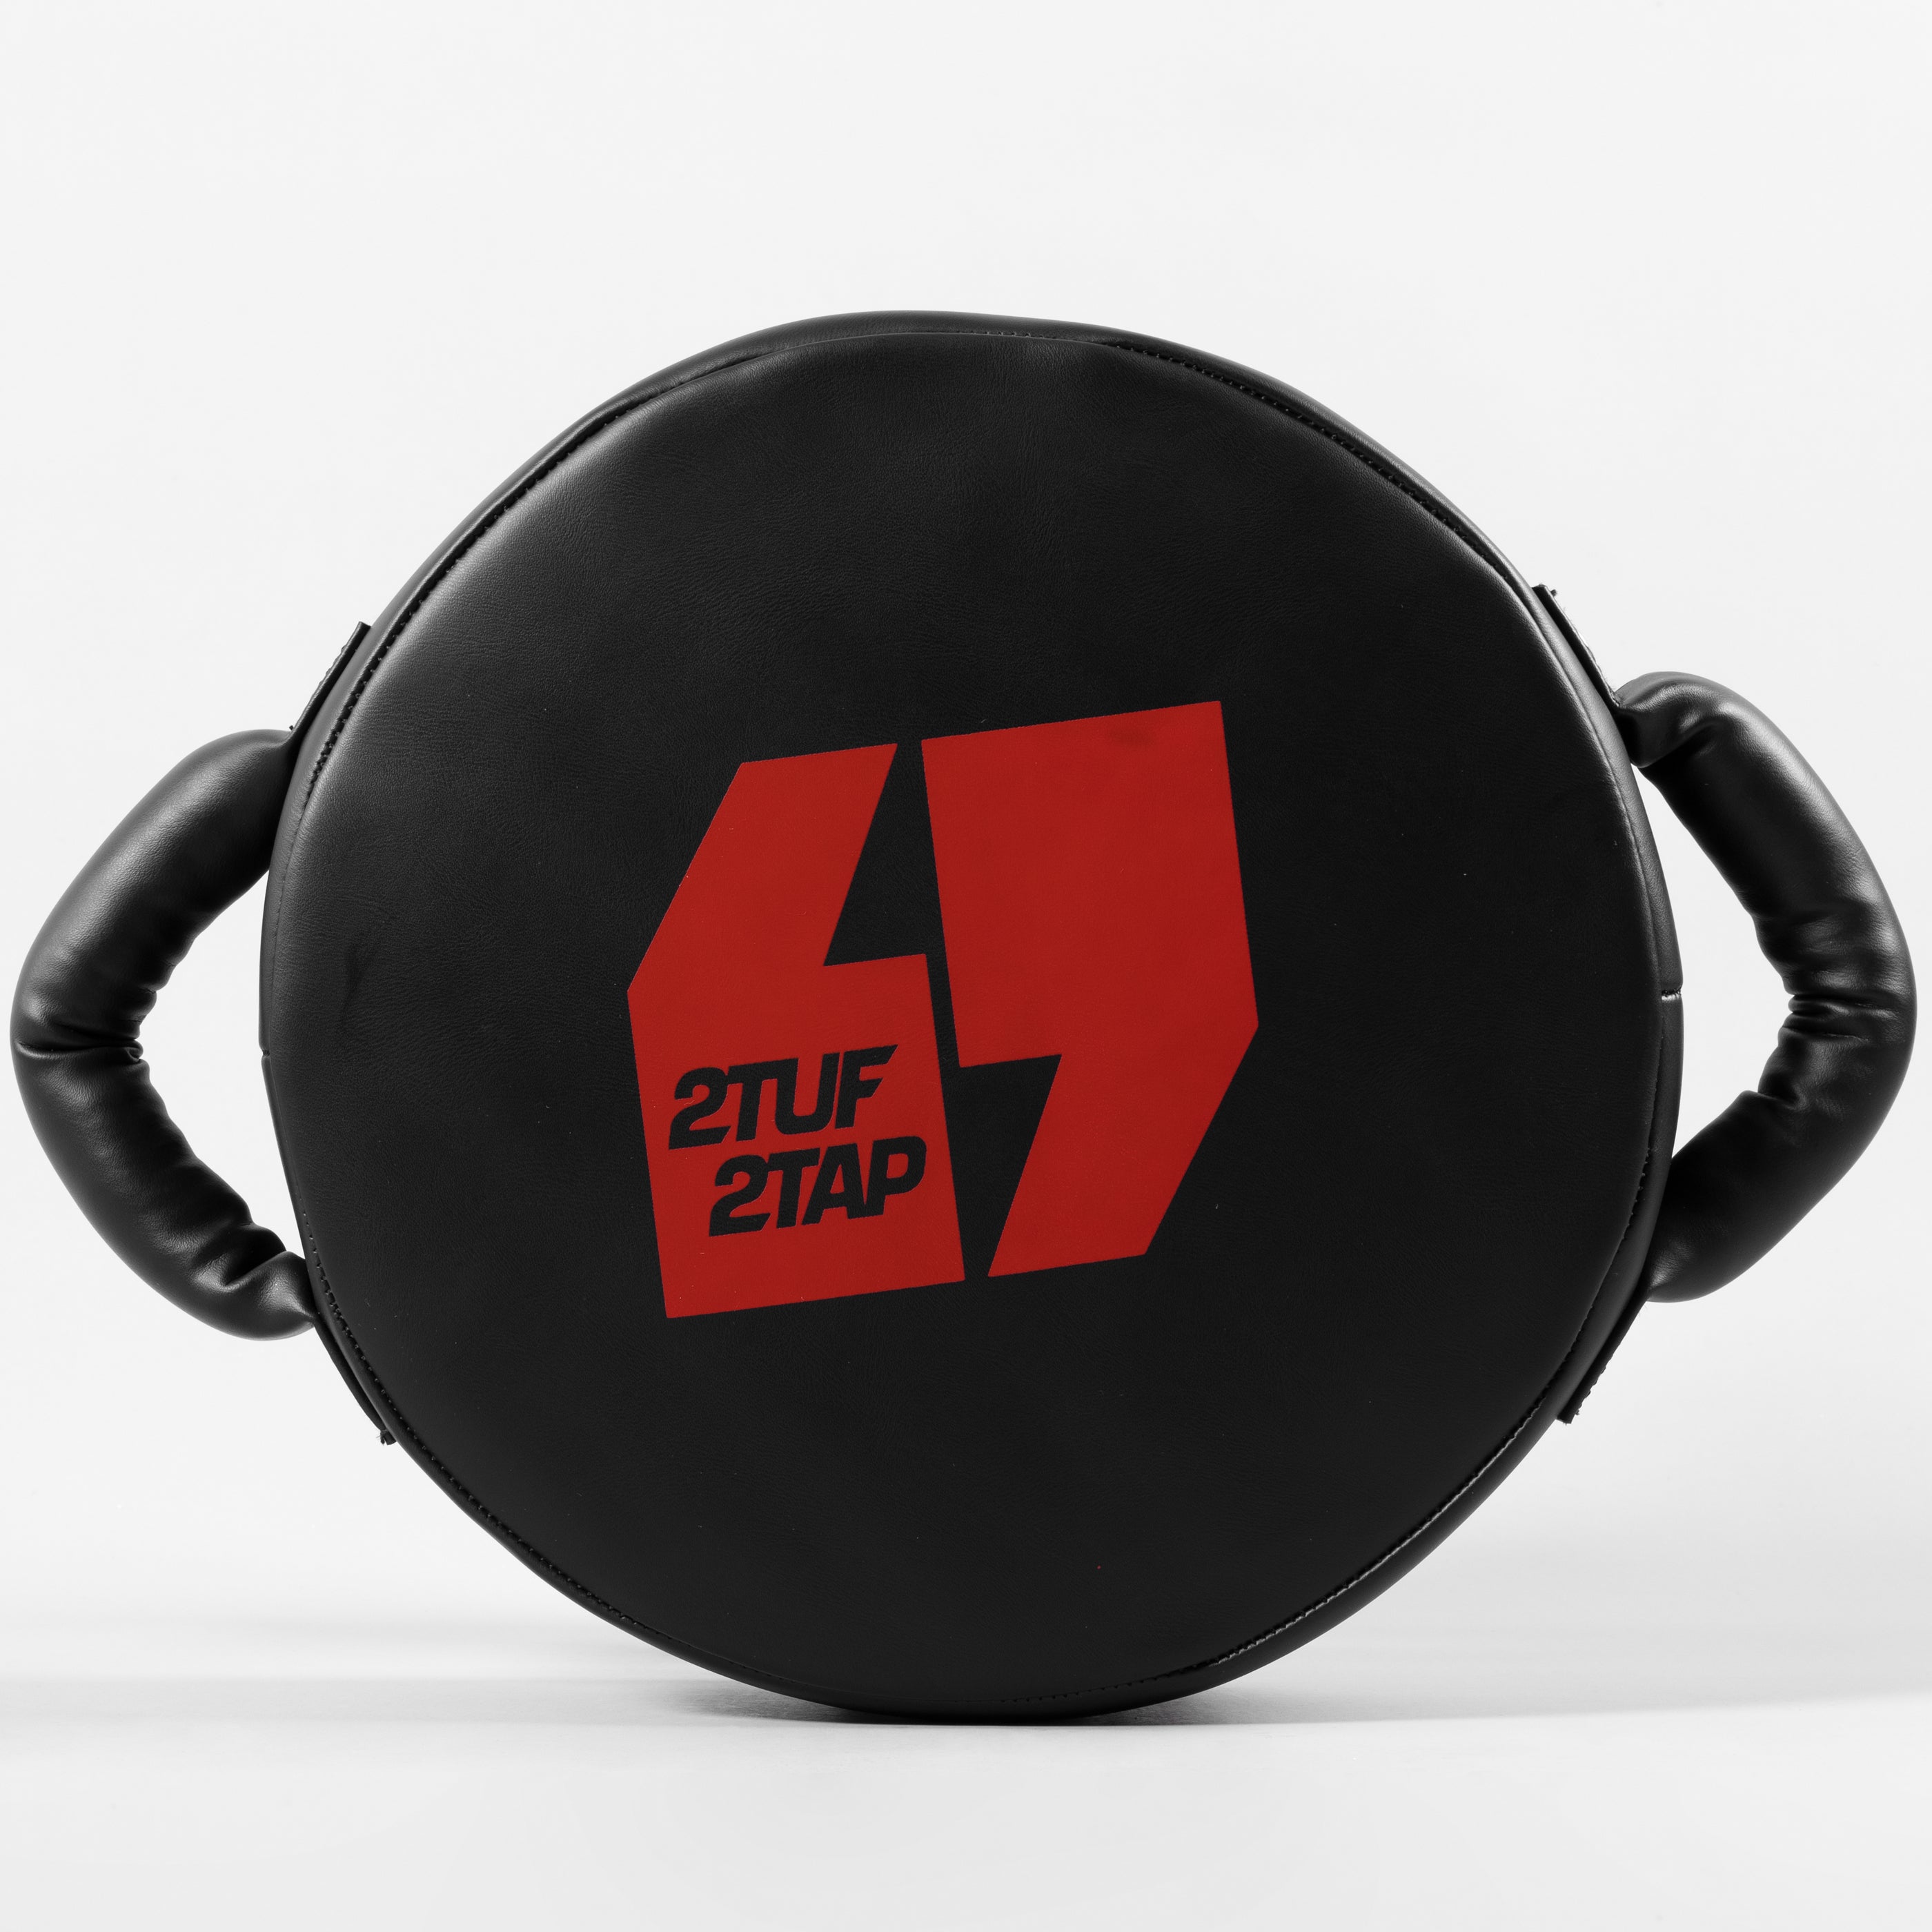 'Slash' Boxing Pad - Round - Black/Red 2TUF2TAP